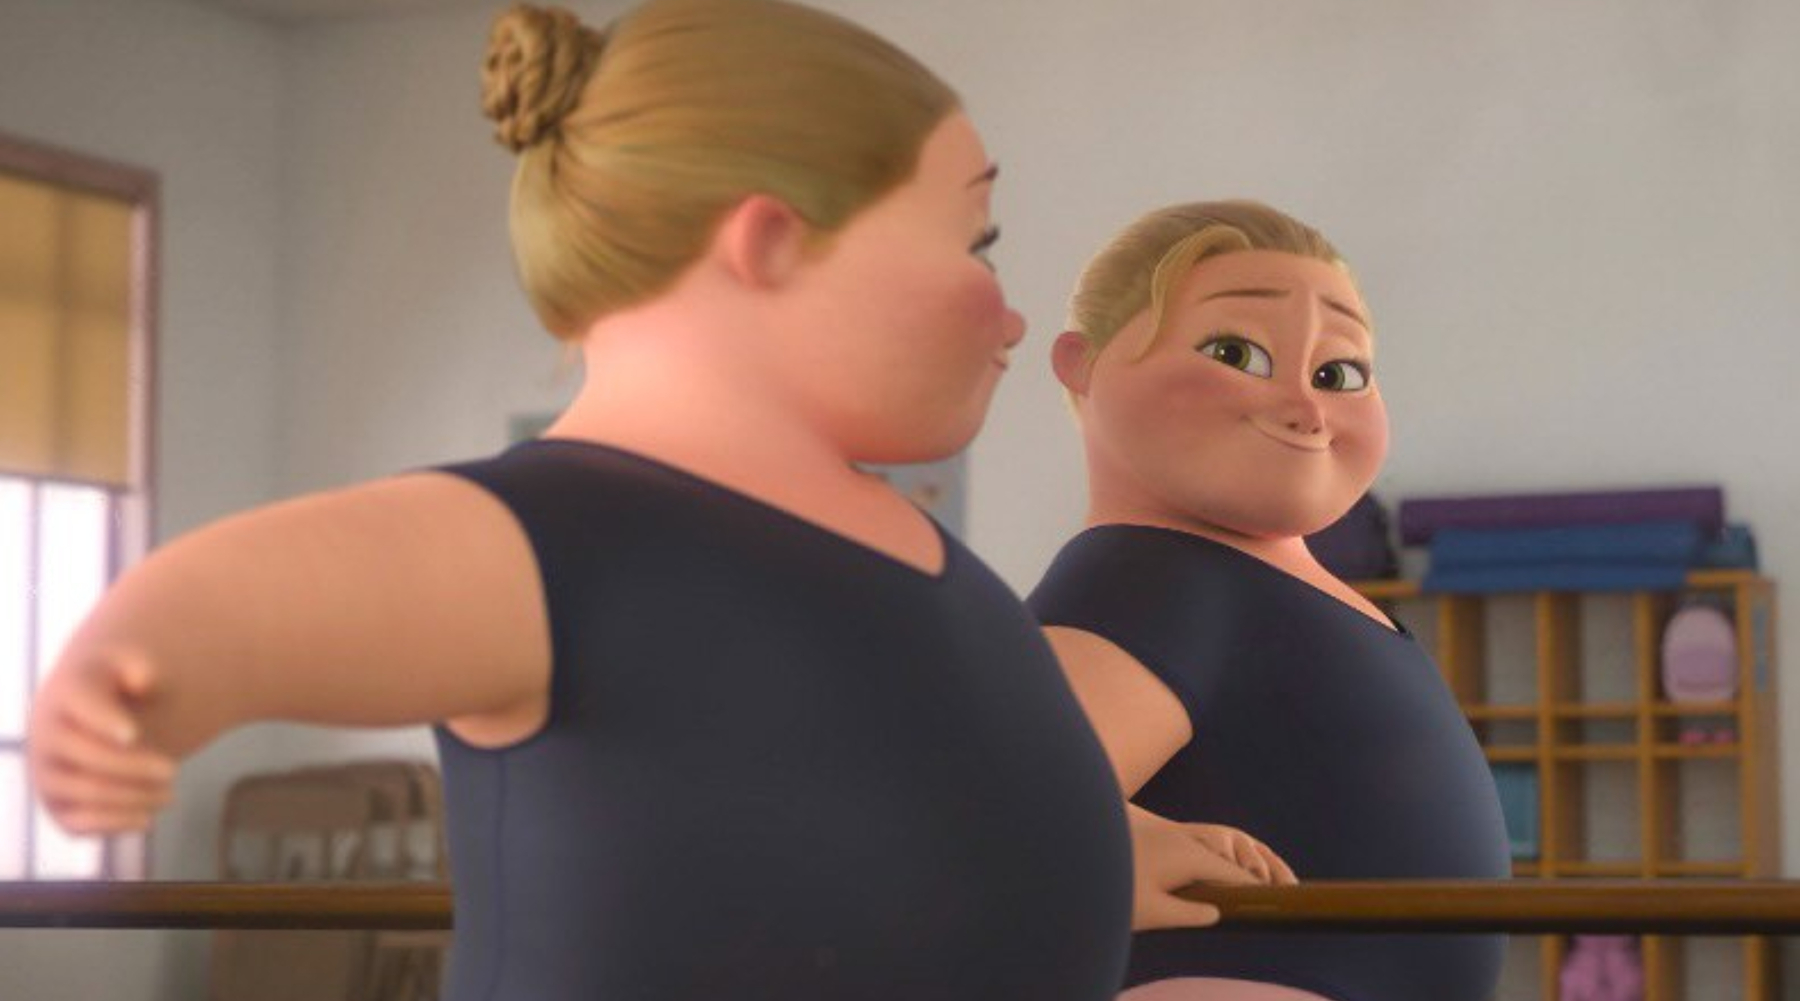 Disney predstavlja prvu plus size protagonistkinju u kratkom animiranom filmu Reflect